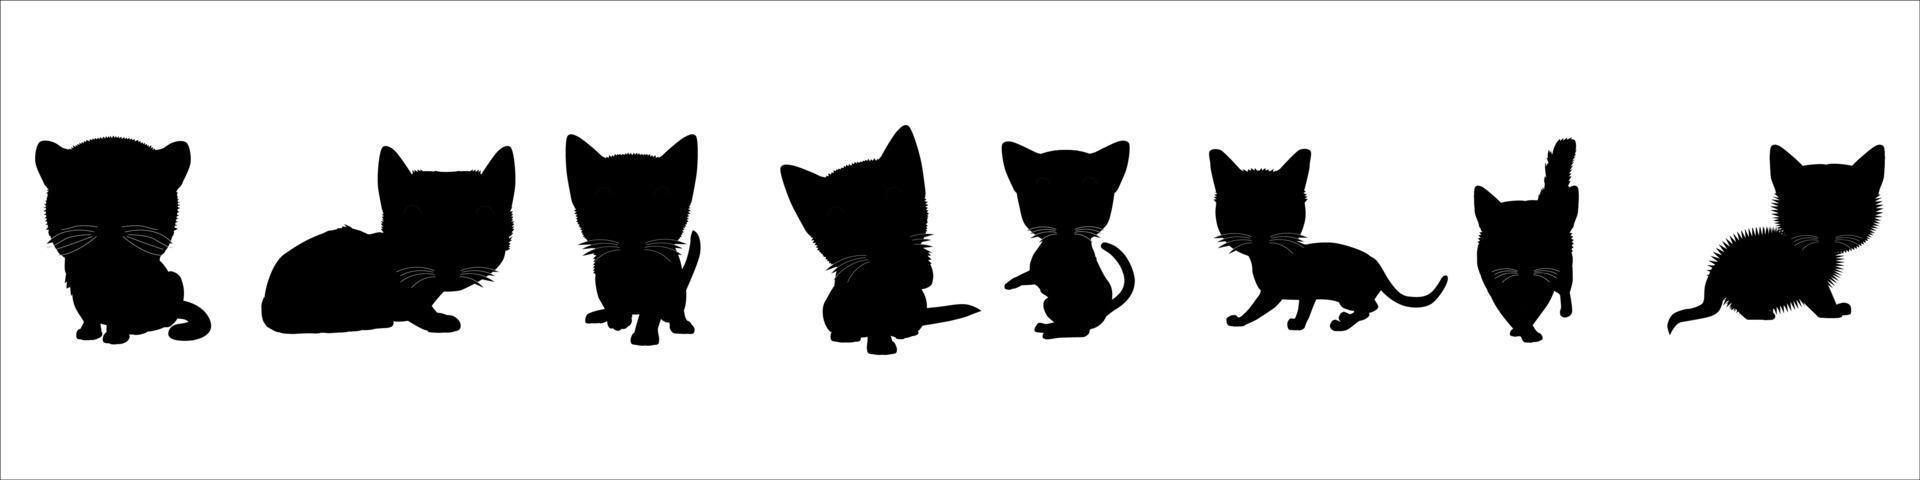 zwart silhouet van kat. vector